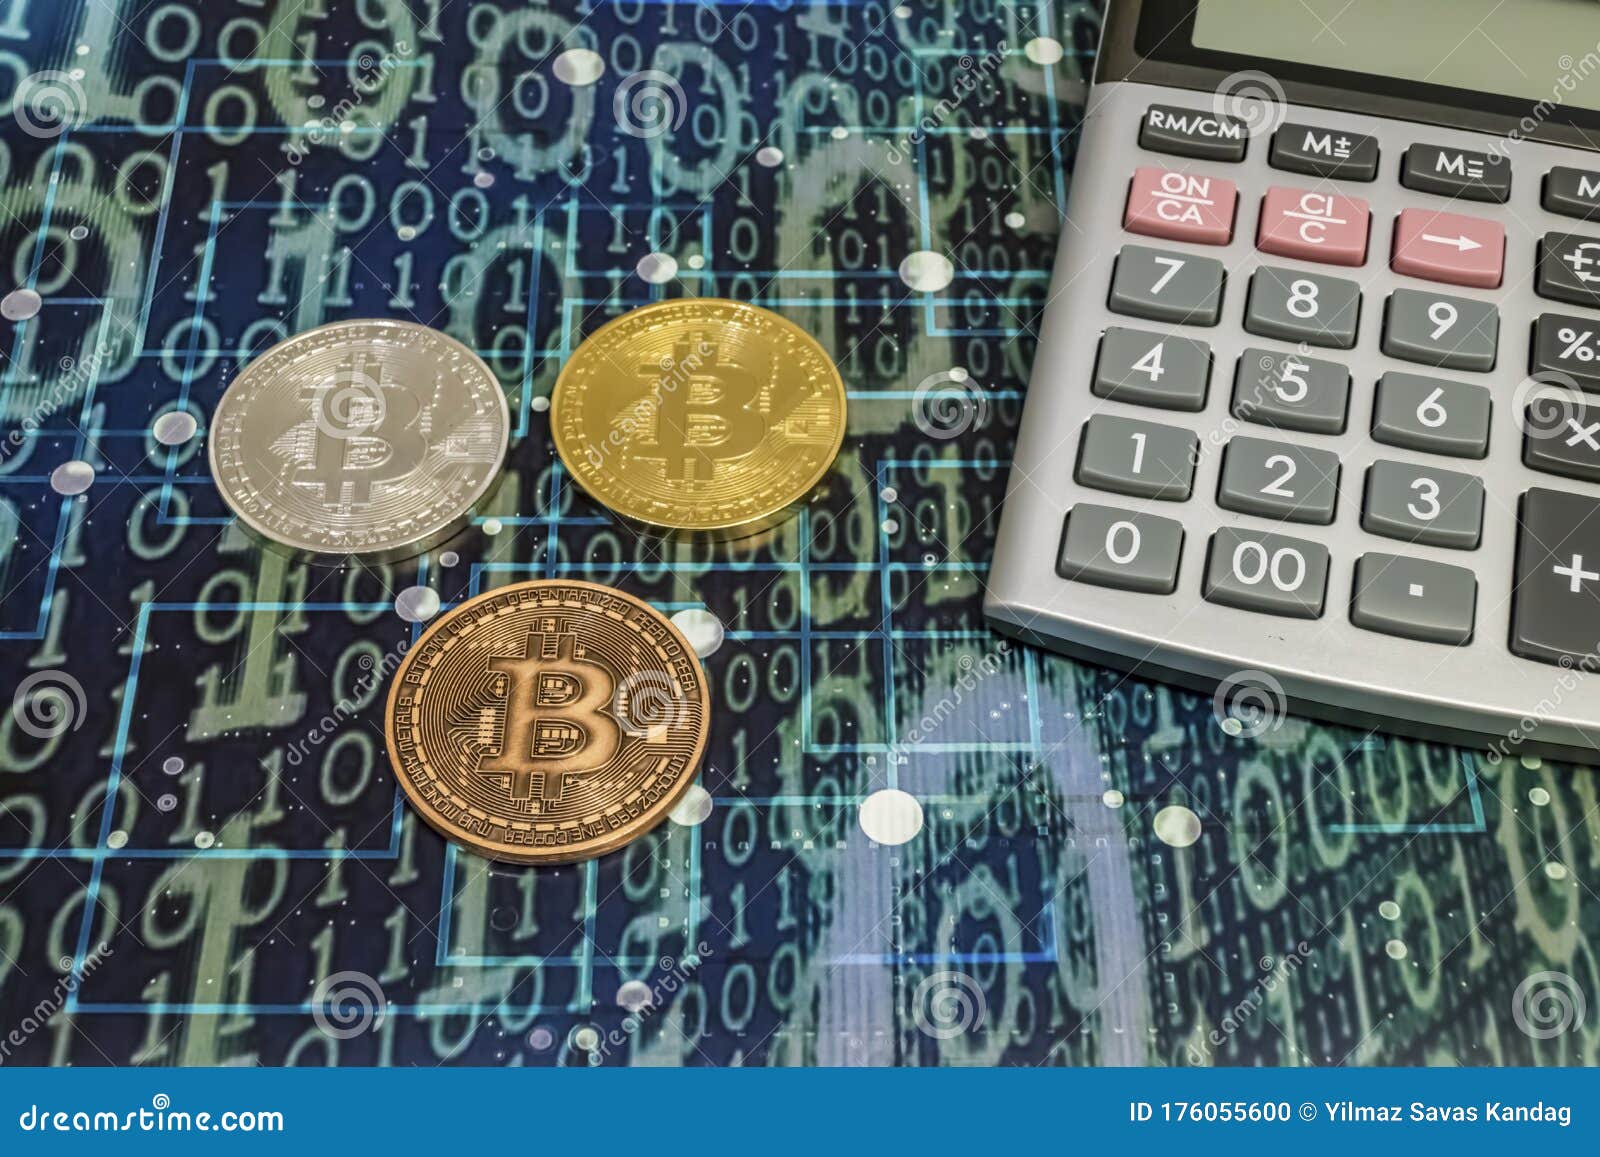 bitcoin bank calculator)